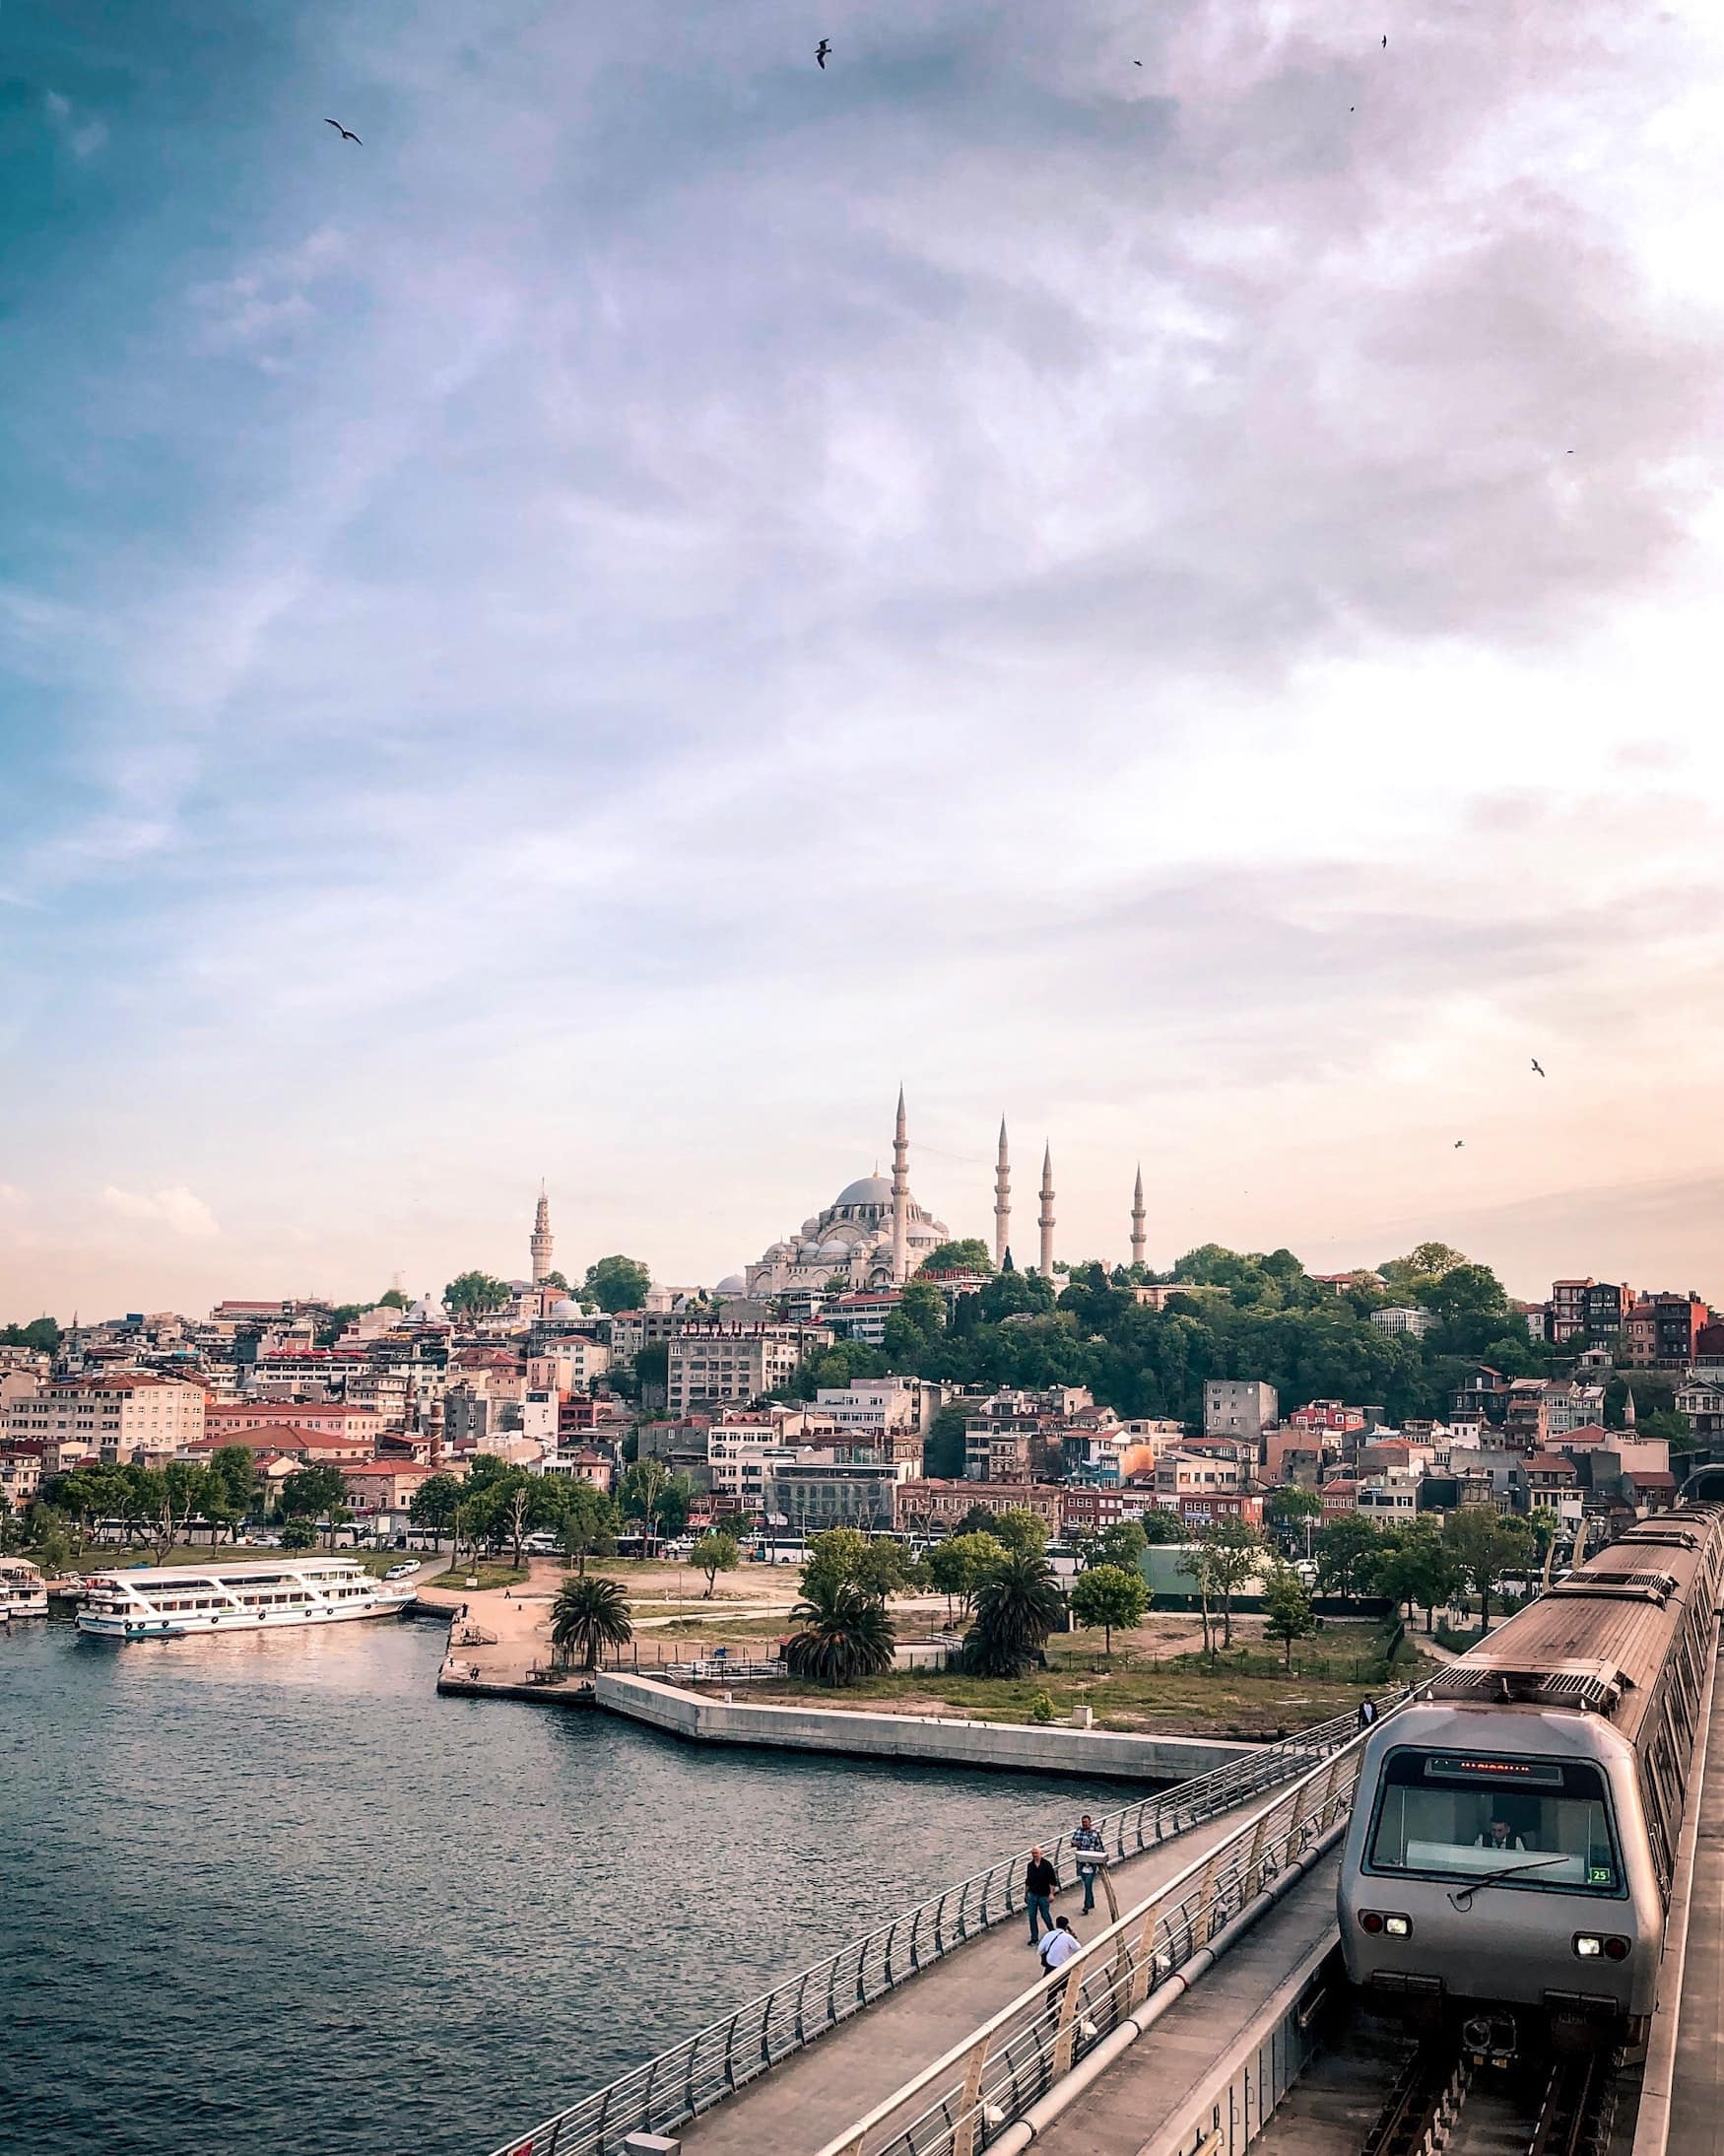 Eminönü in Istanbul